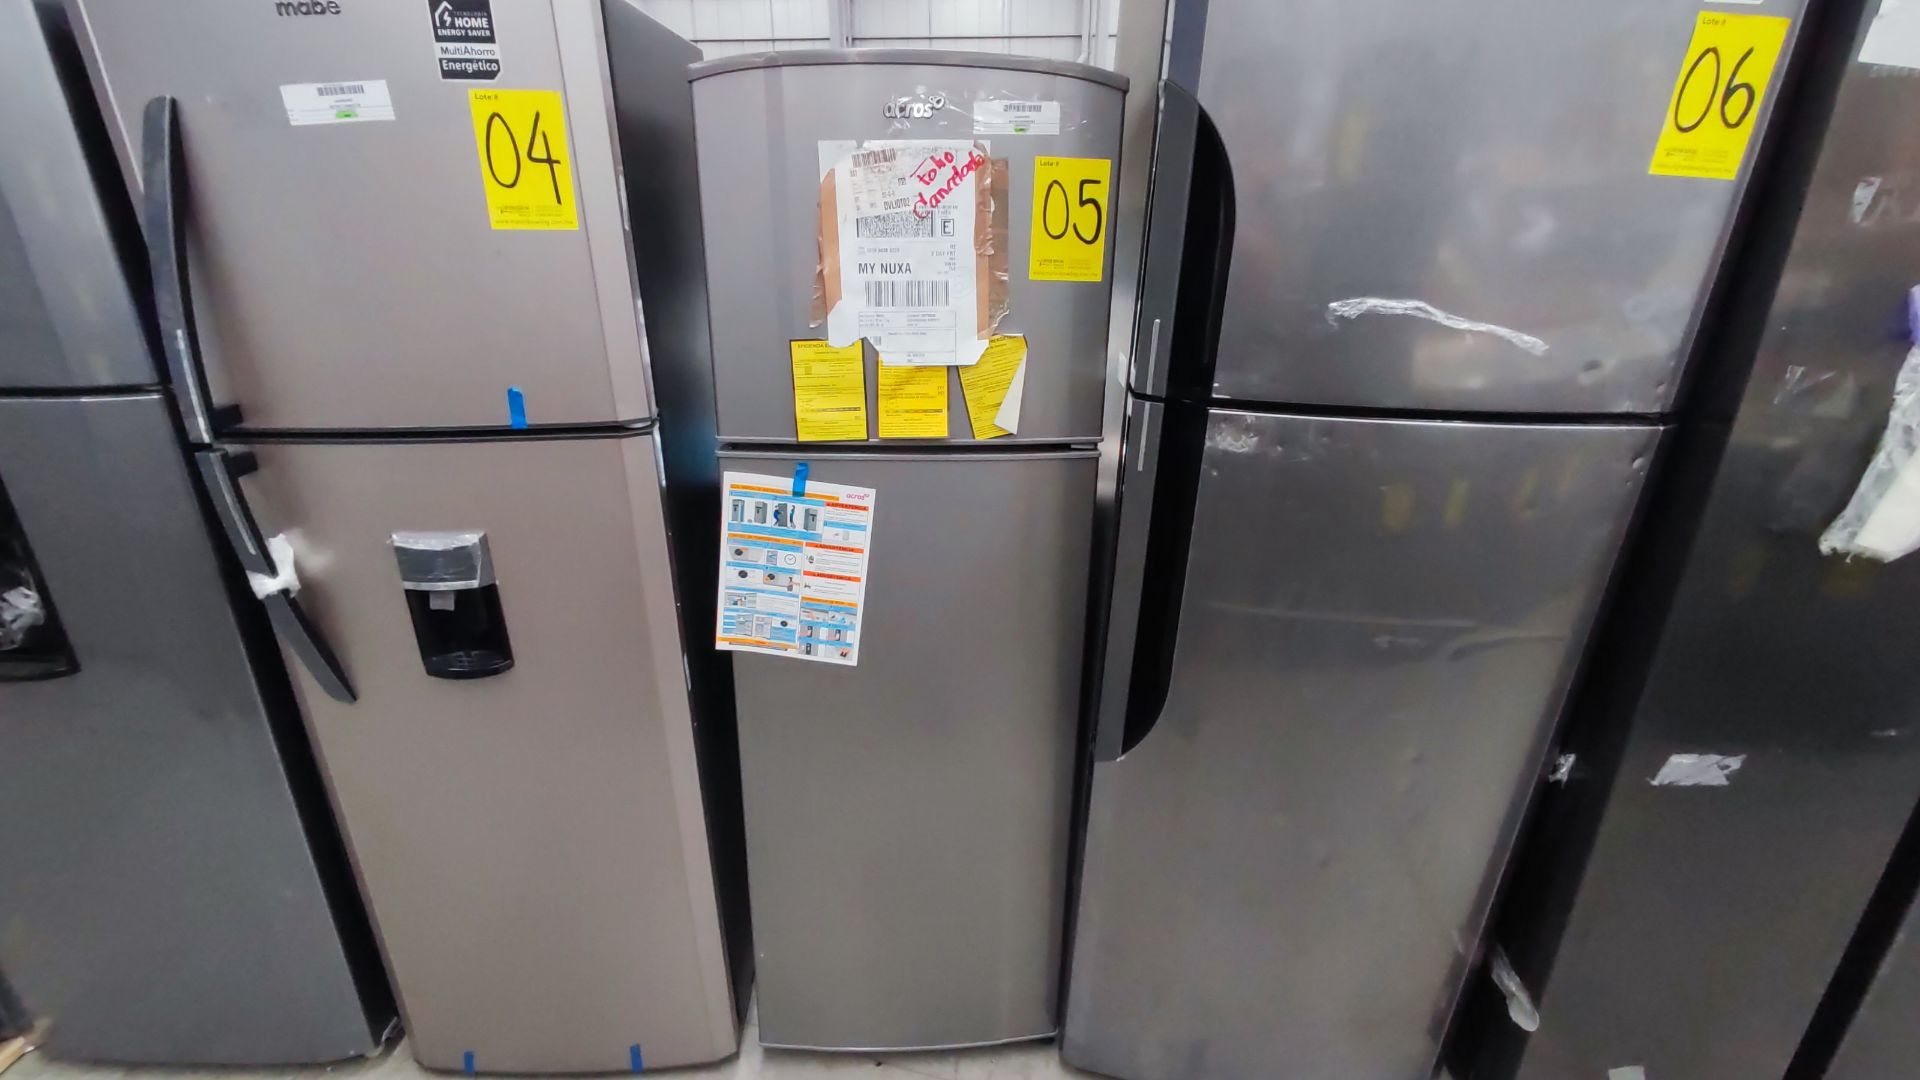 1 Refrigerador Marca Whirlpool, Modelo AT9007G03, Serie 1333816, Color Gris Detalles Estéticos. Fav - Image 6 of 12